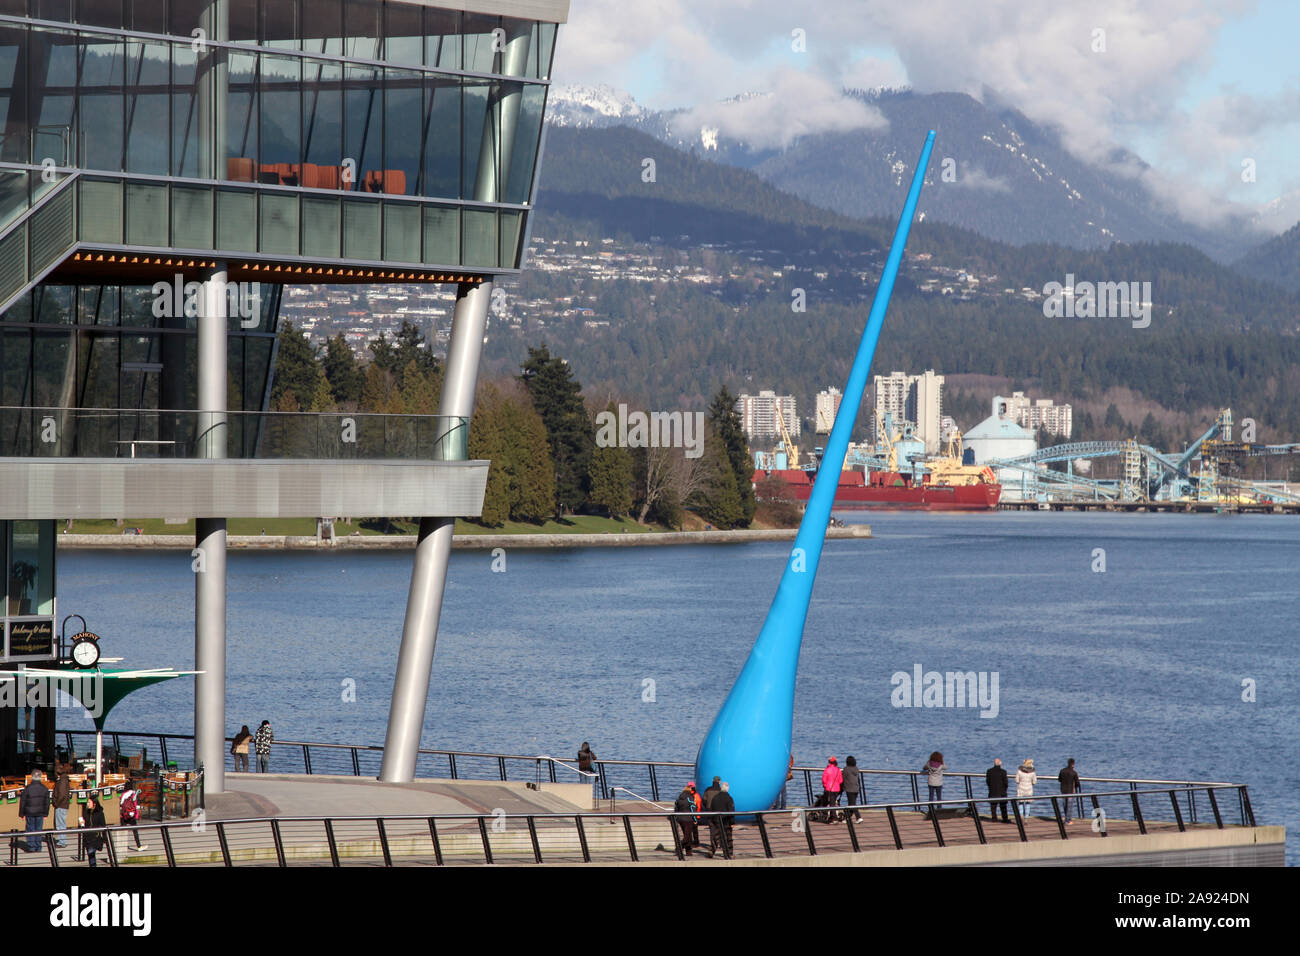 La liste déroulante sculpture de Â"Inges Ideeâ un monument en forme des gouttes sur le front, Vancouver, Colombie-Britannique, Canada, Hiver 2013 Banque D'Images